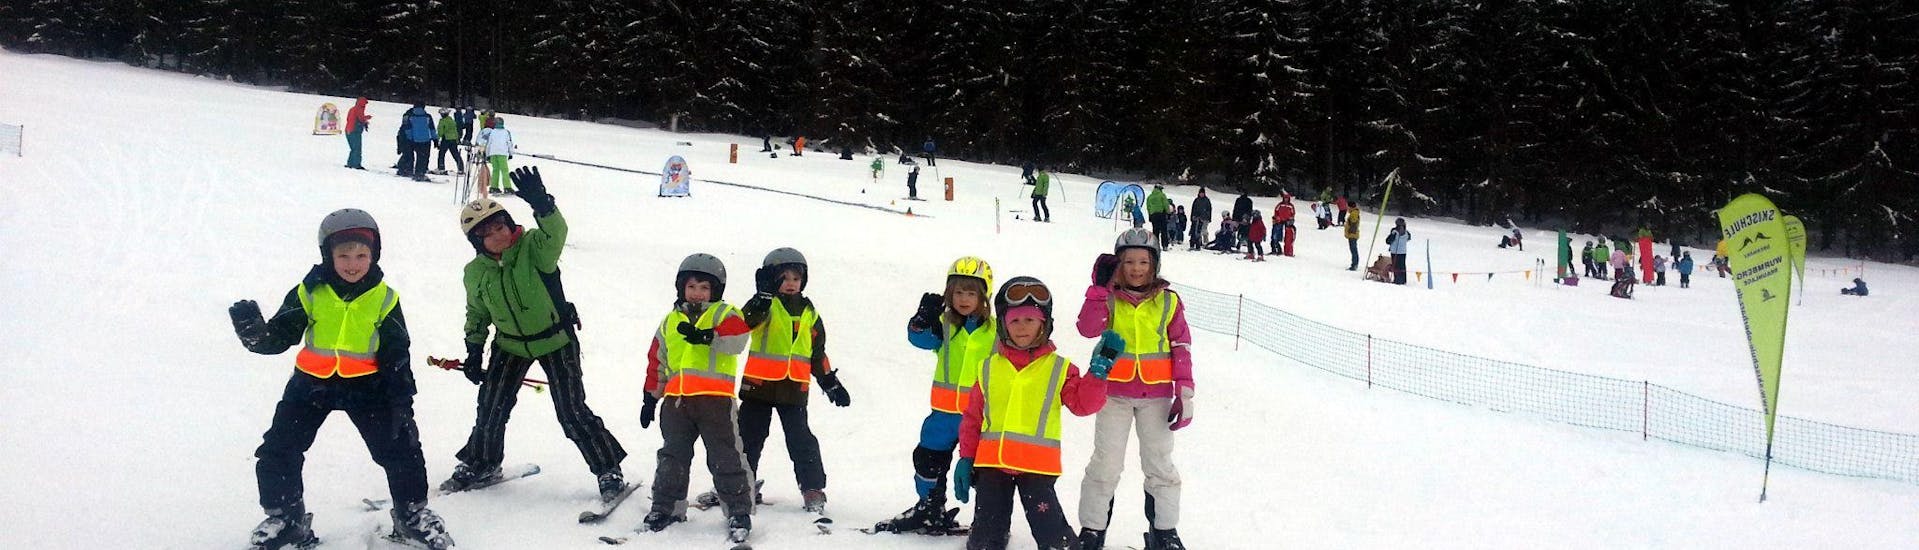 Clases de esquí para niños a partir de 12 años para debutantes.